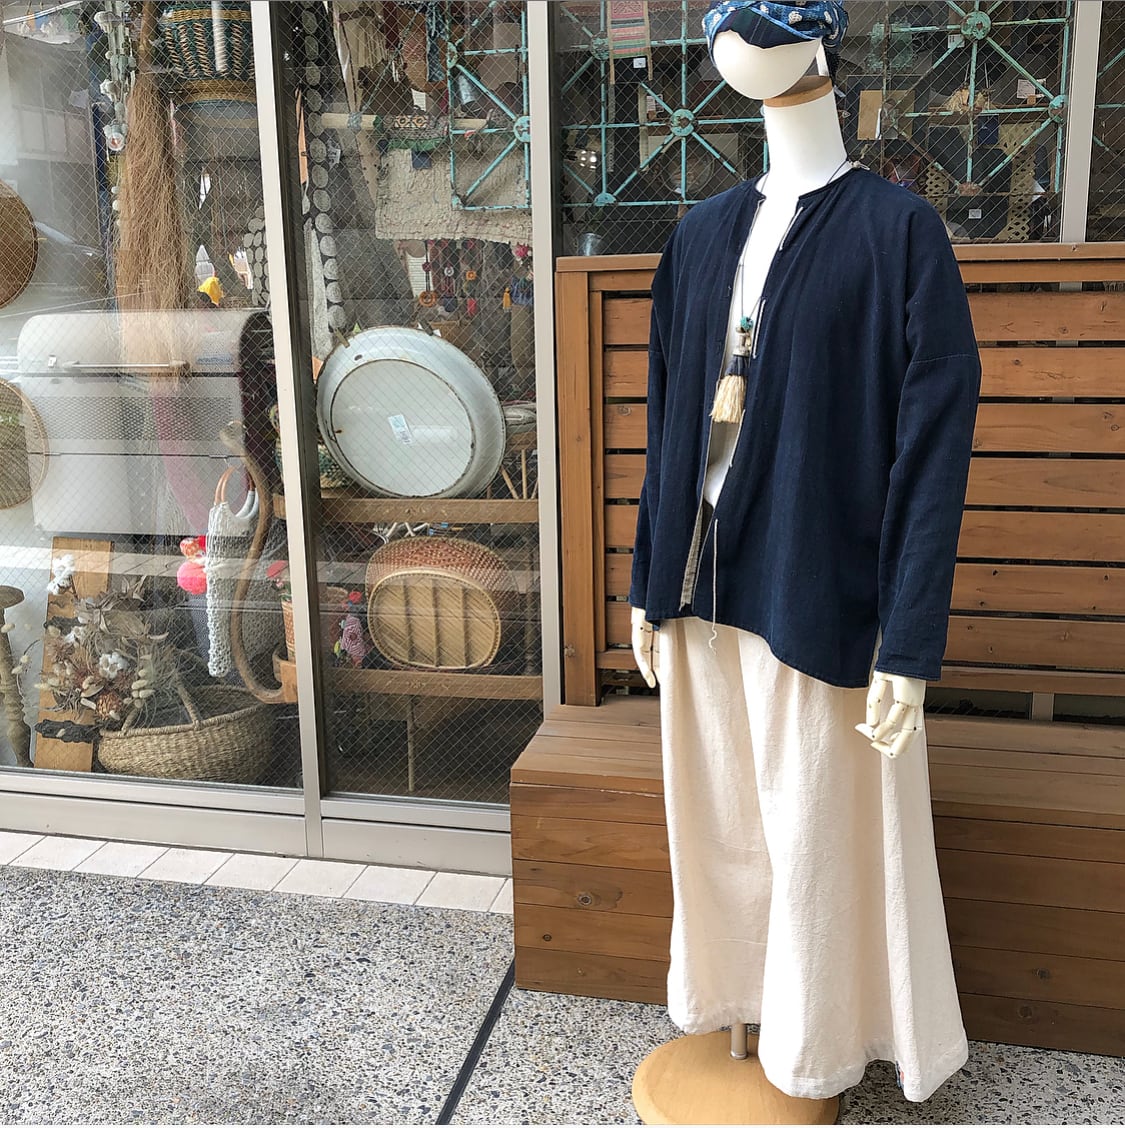 モン族 古布 藍染 手刺繍 リメイク品 ジャケット 民族衣装-